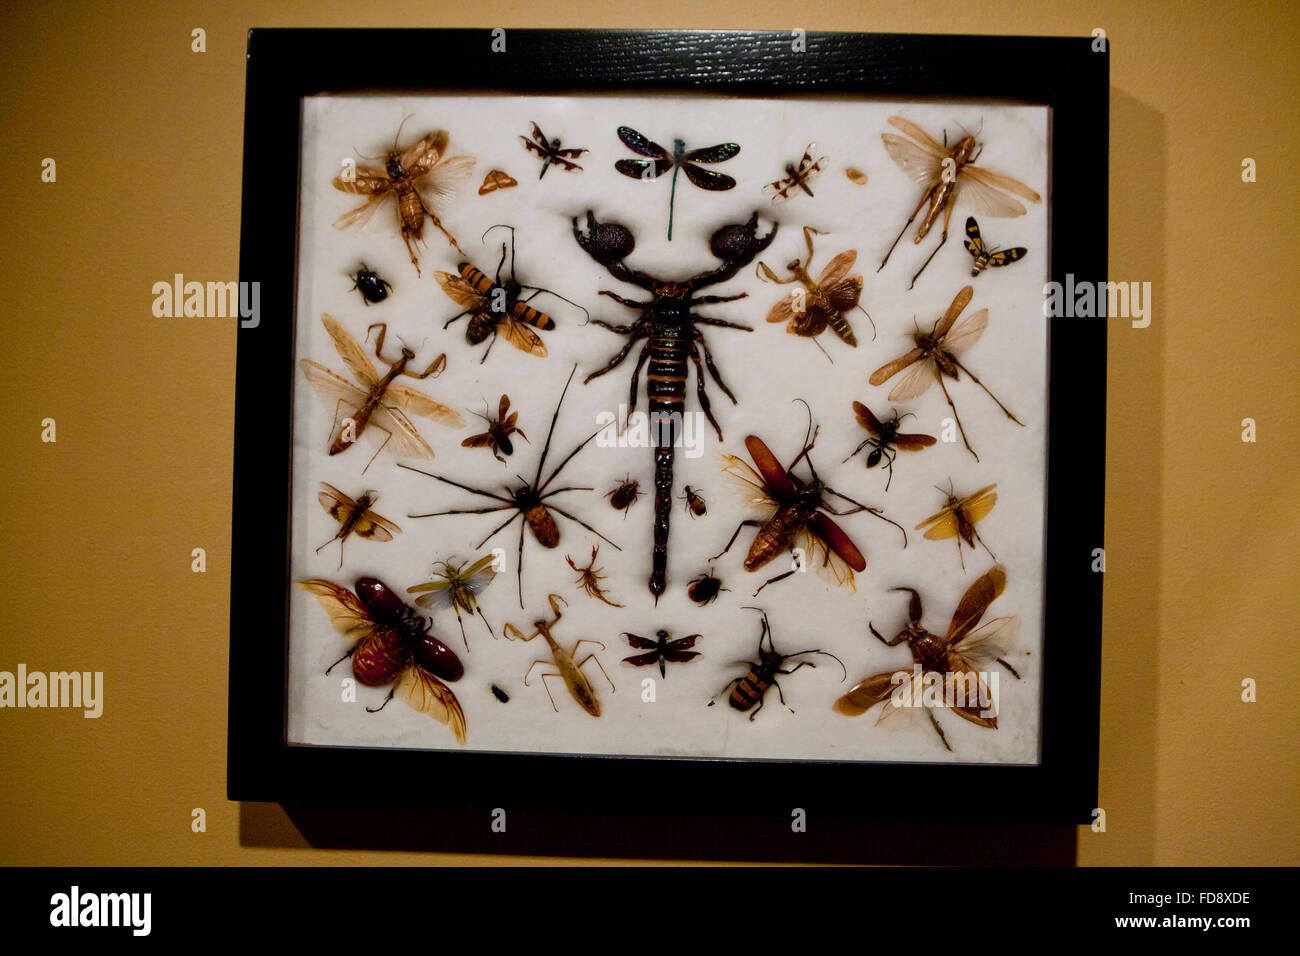 Collection d'insectes dans l'image Banque D'Images